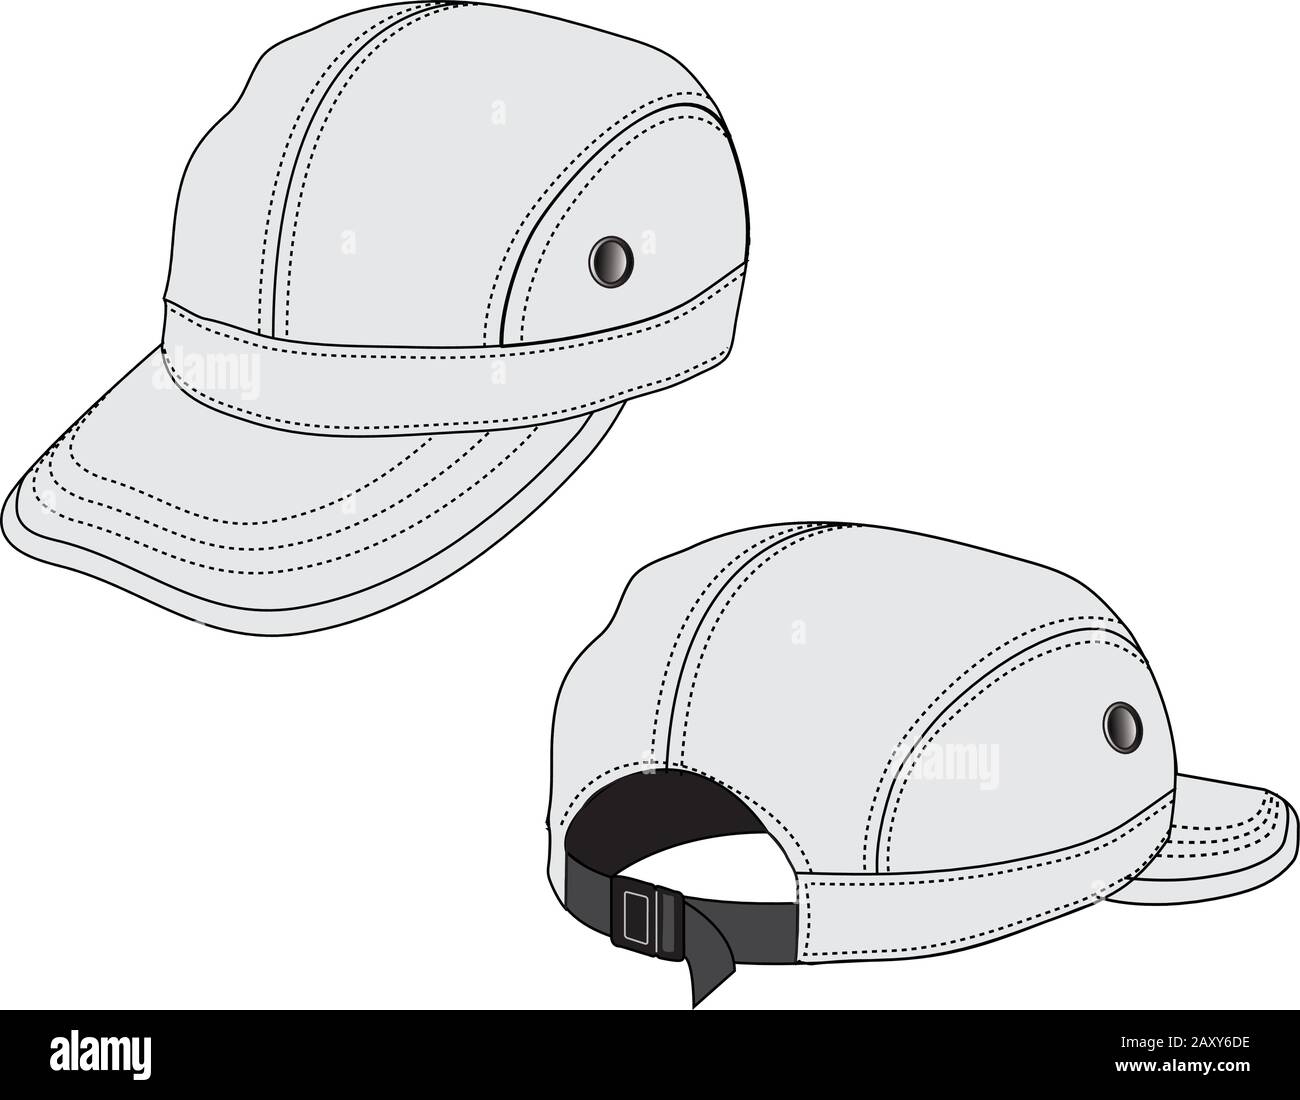 Vector Illustration of baseball cap (headgear) Stock Vector